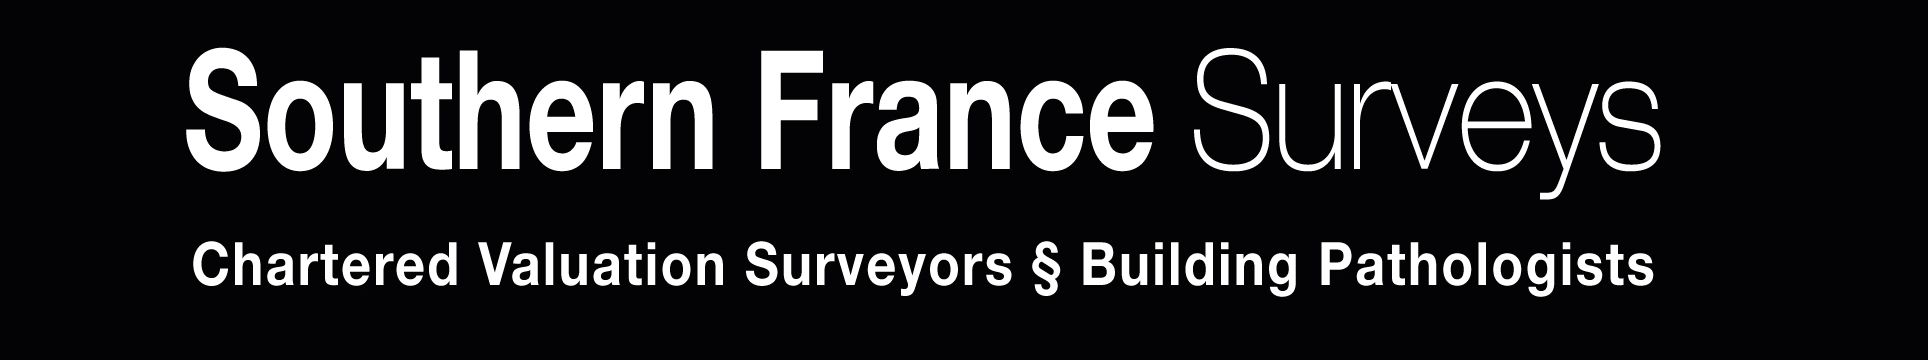 Southern France Surveys